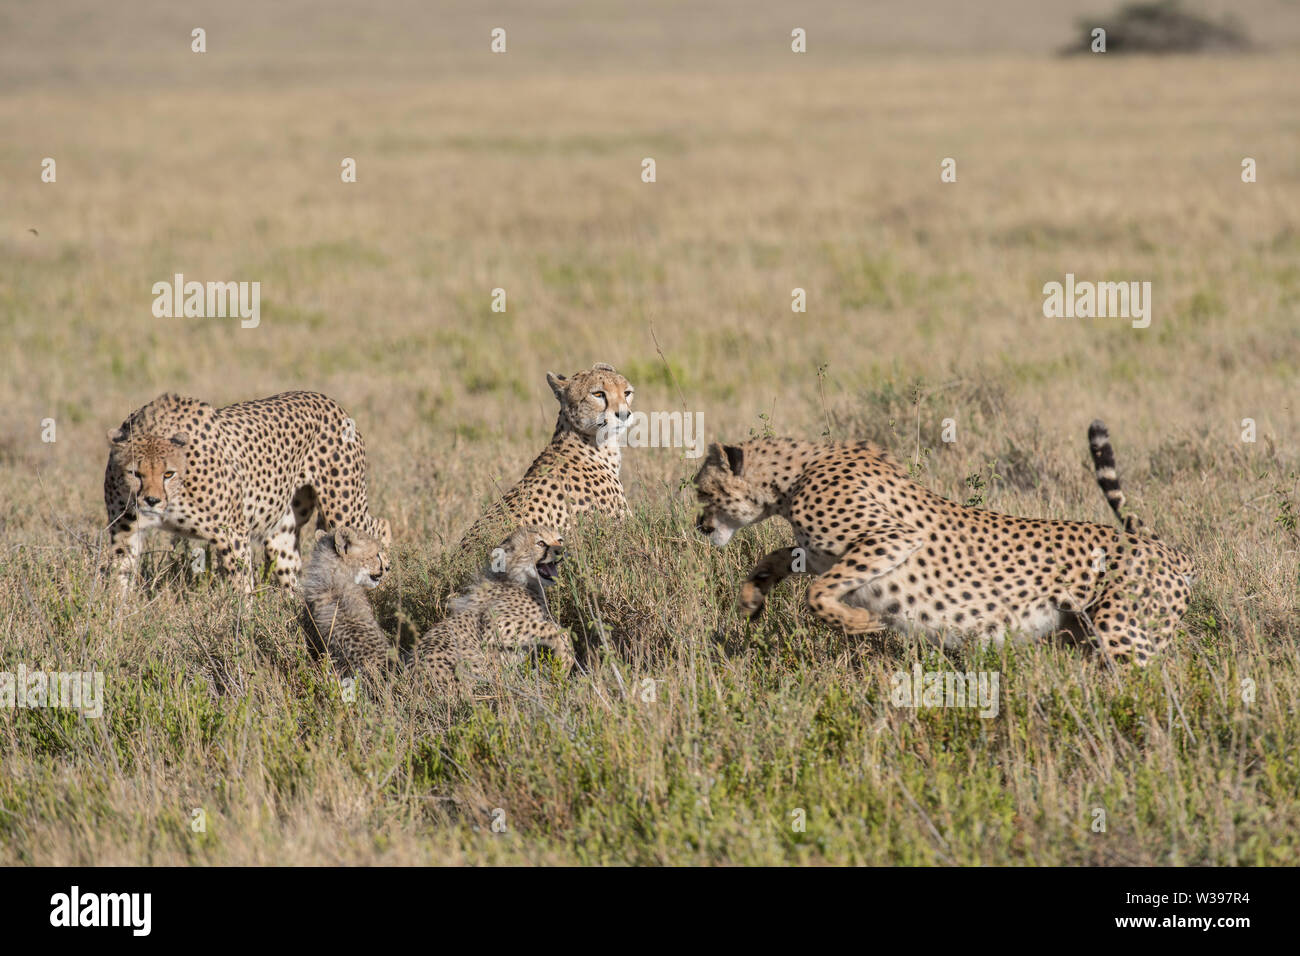 Männliche Geparden untersucht eine Mutter und Jungen, Serengeti National Park, Tansania - Es gibt eine Reihe von Bildern für diese Begegnung zur Verfügung. Stockfoto